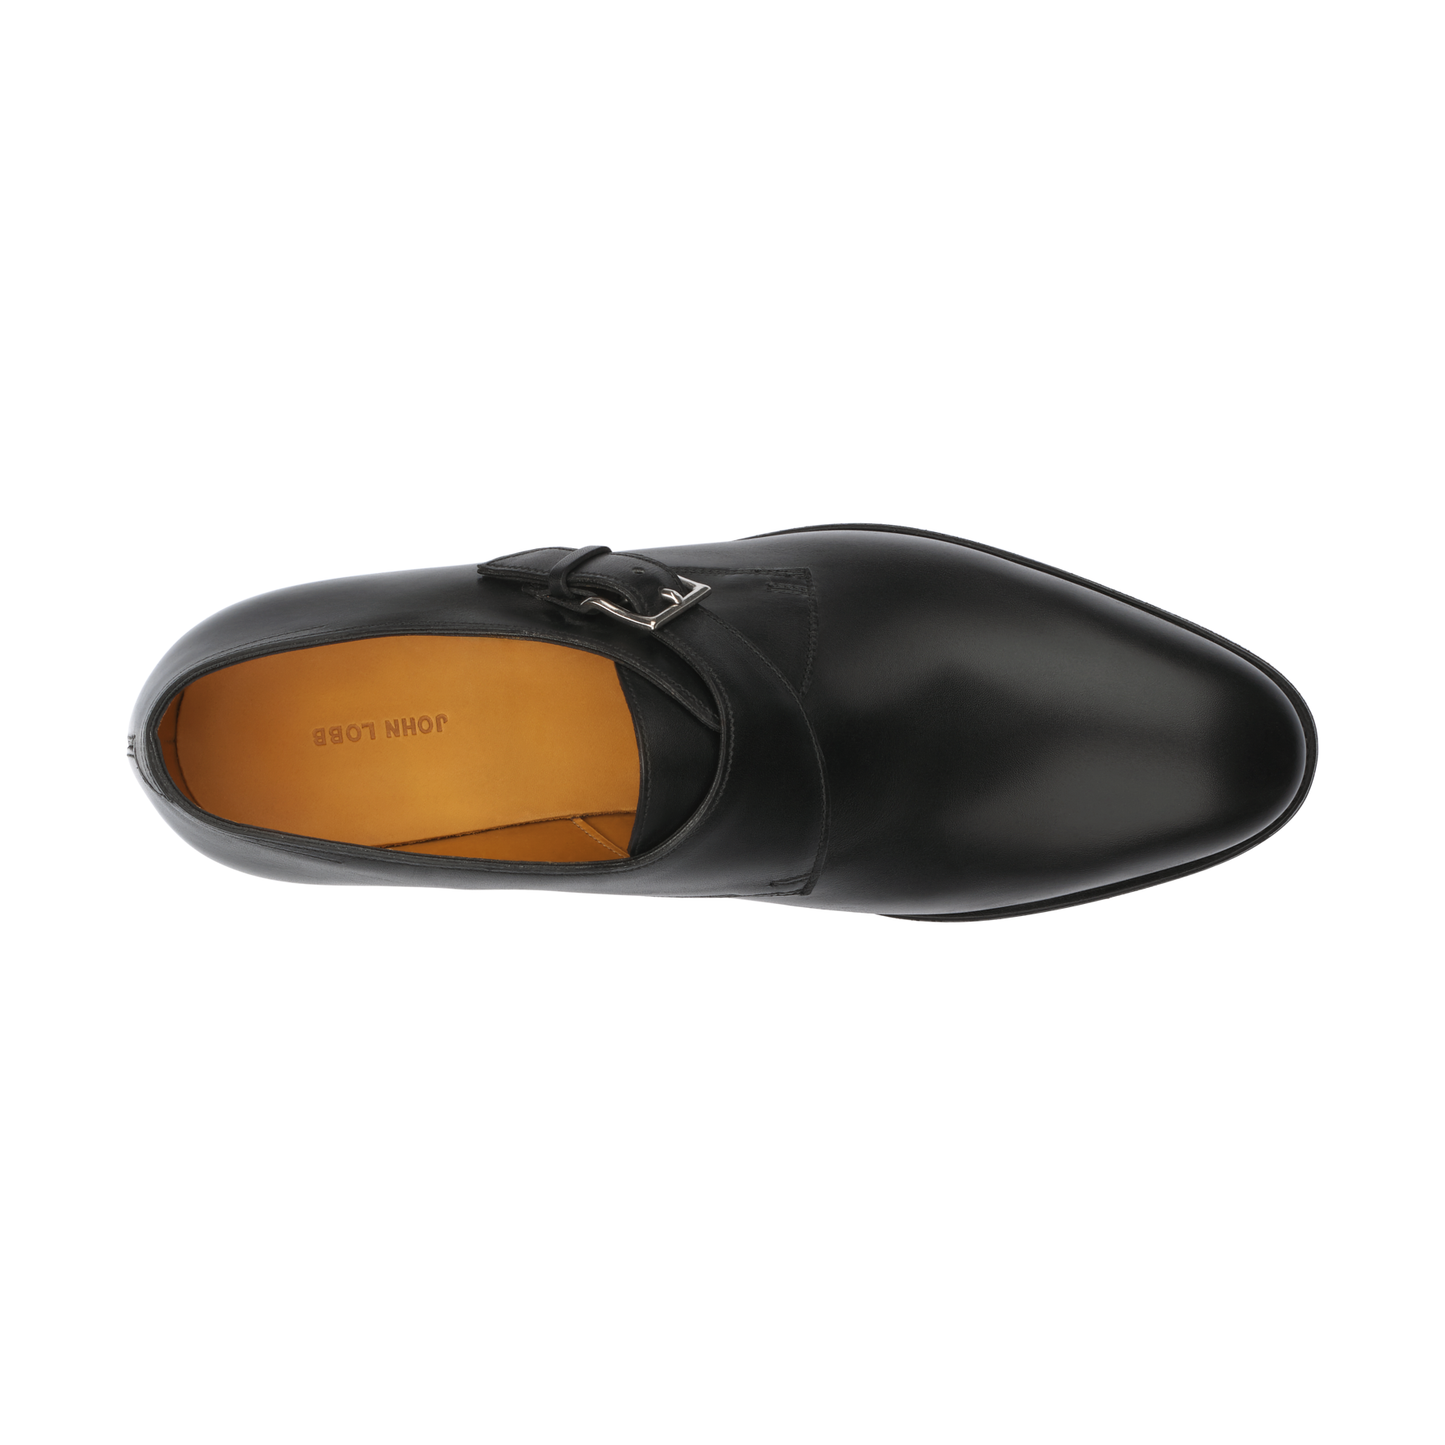 John Lobb "Ashill" Leather Single-Monk Shoes in Black - SARTALE